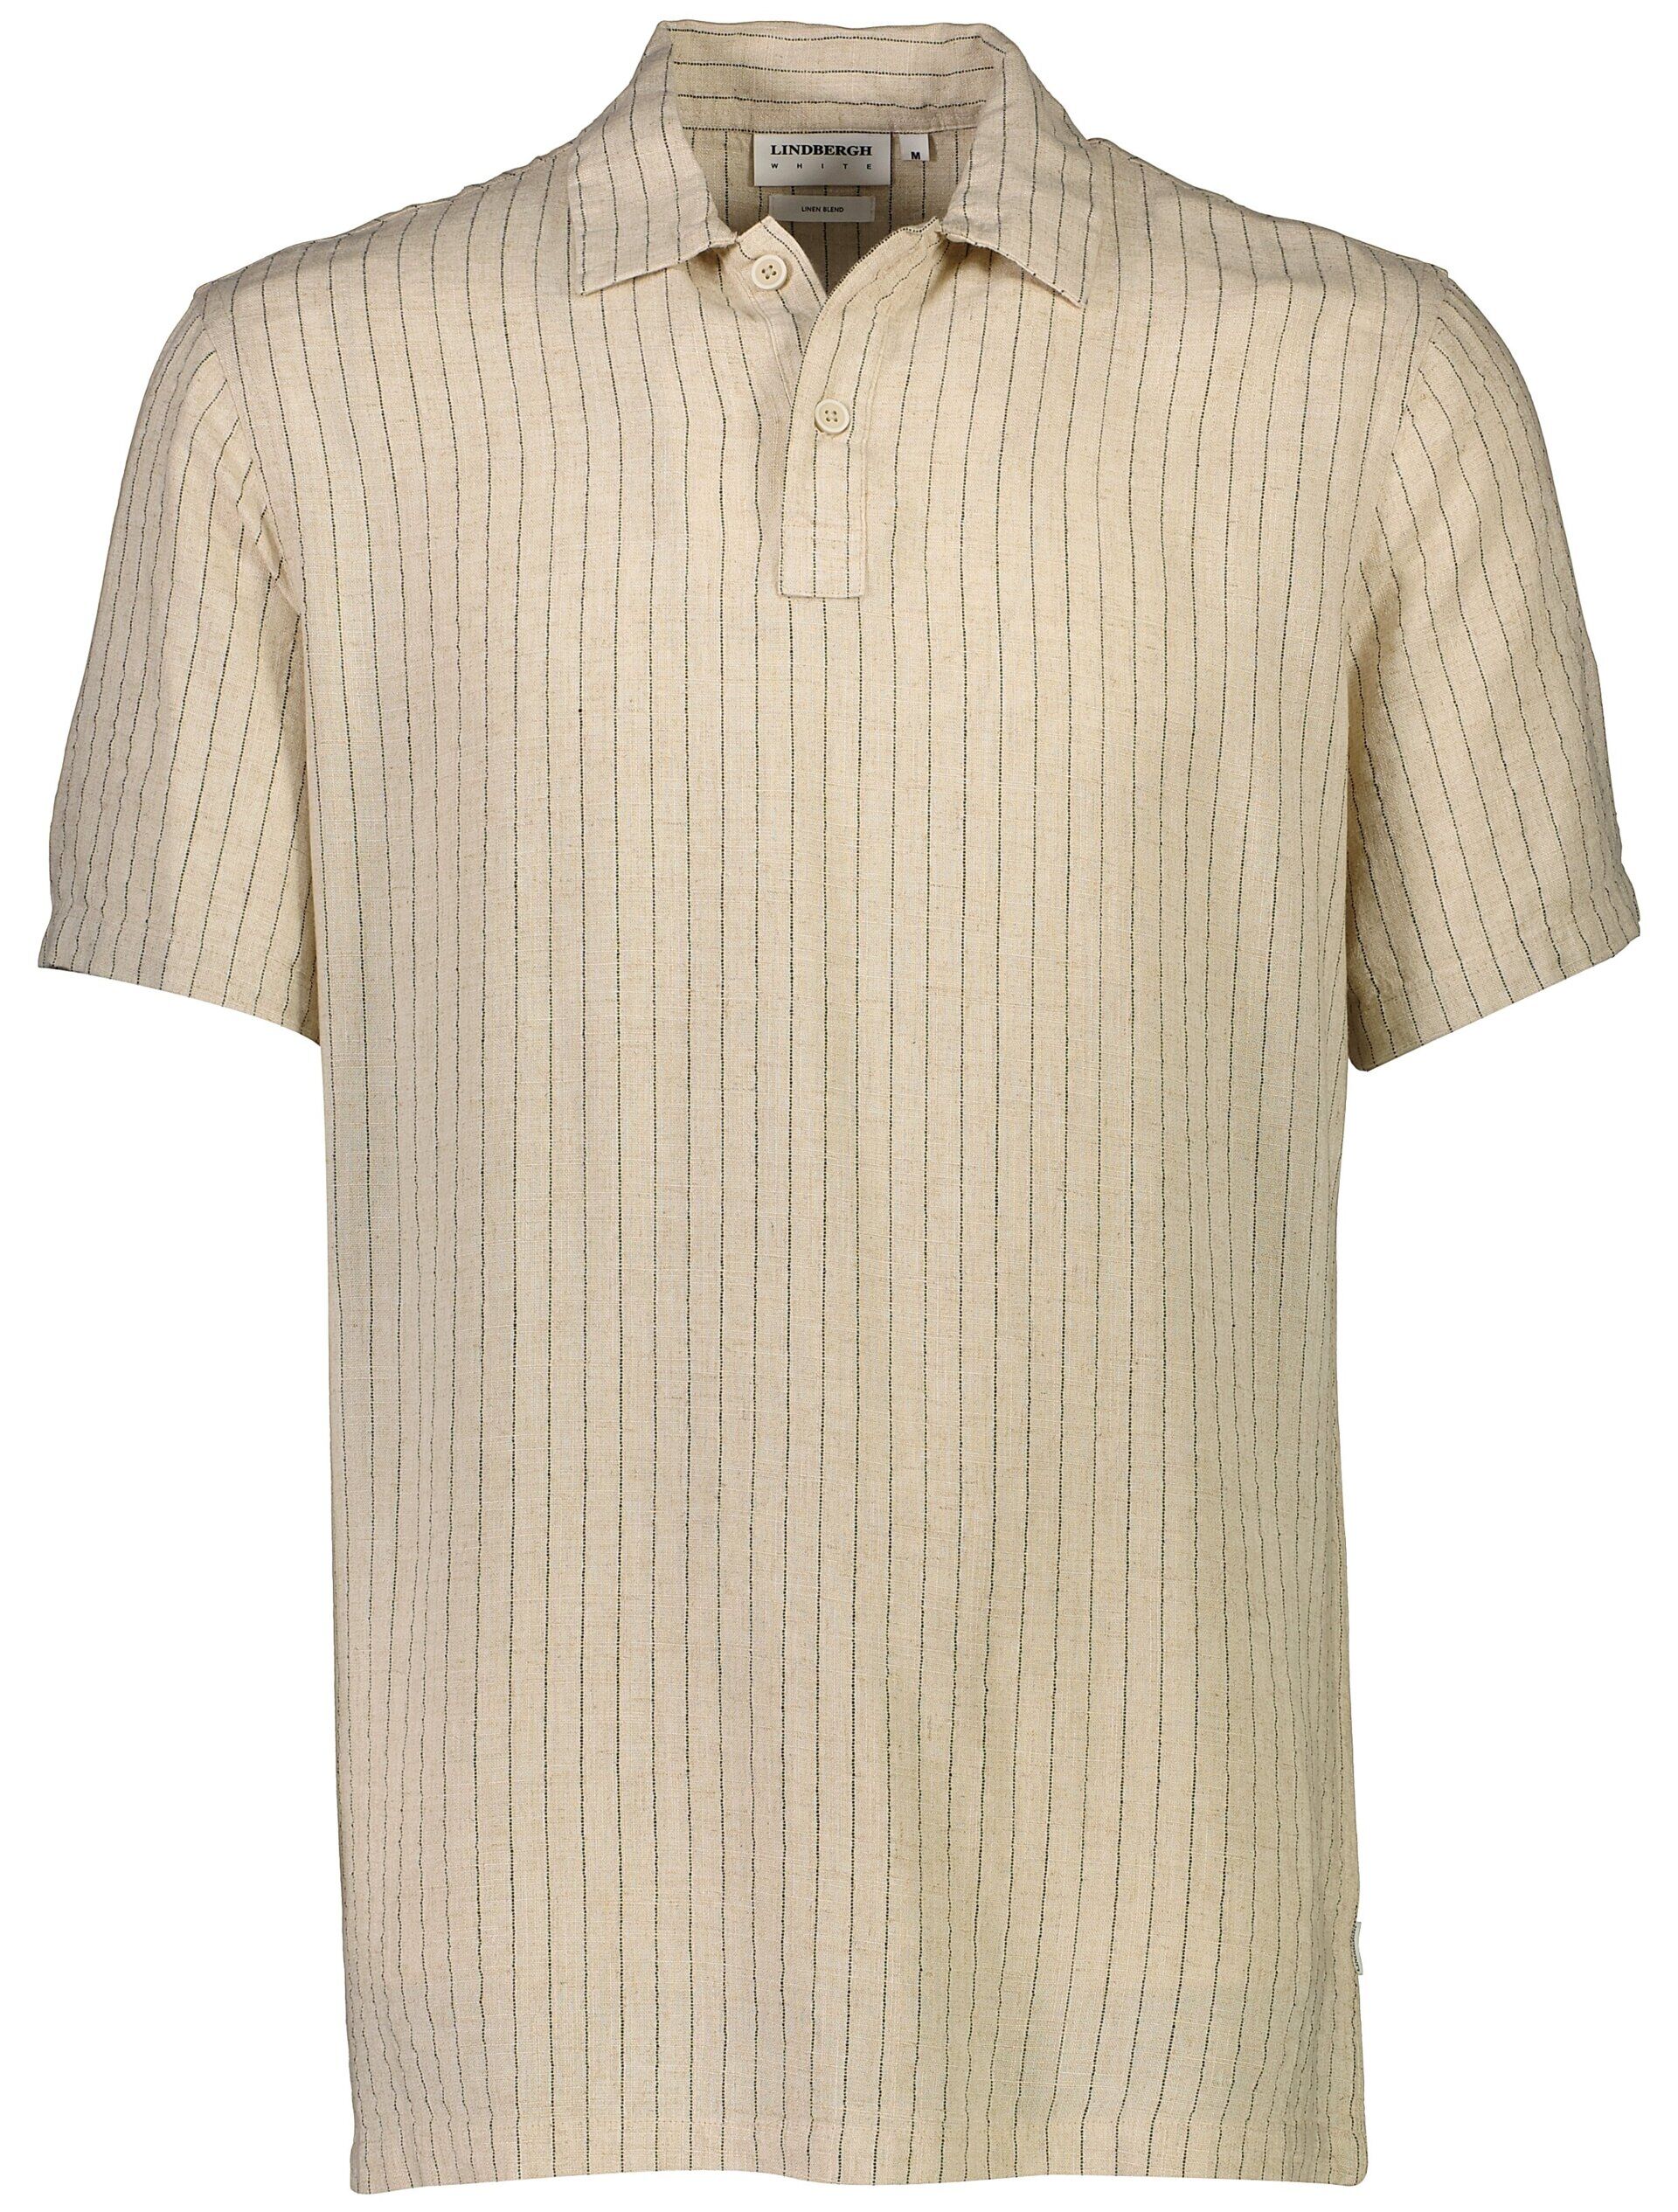 Polo shirt 30-203595